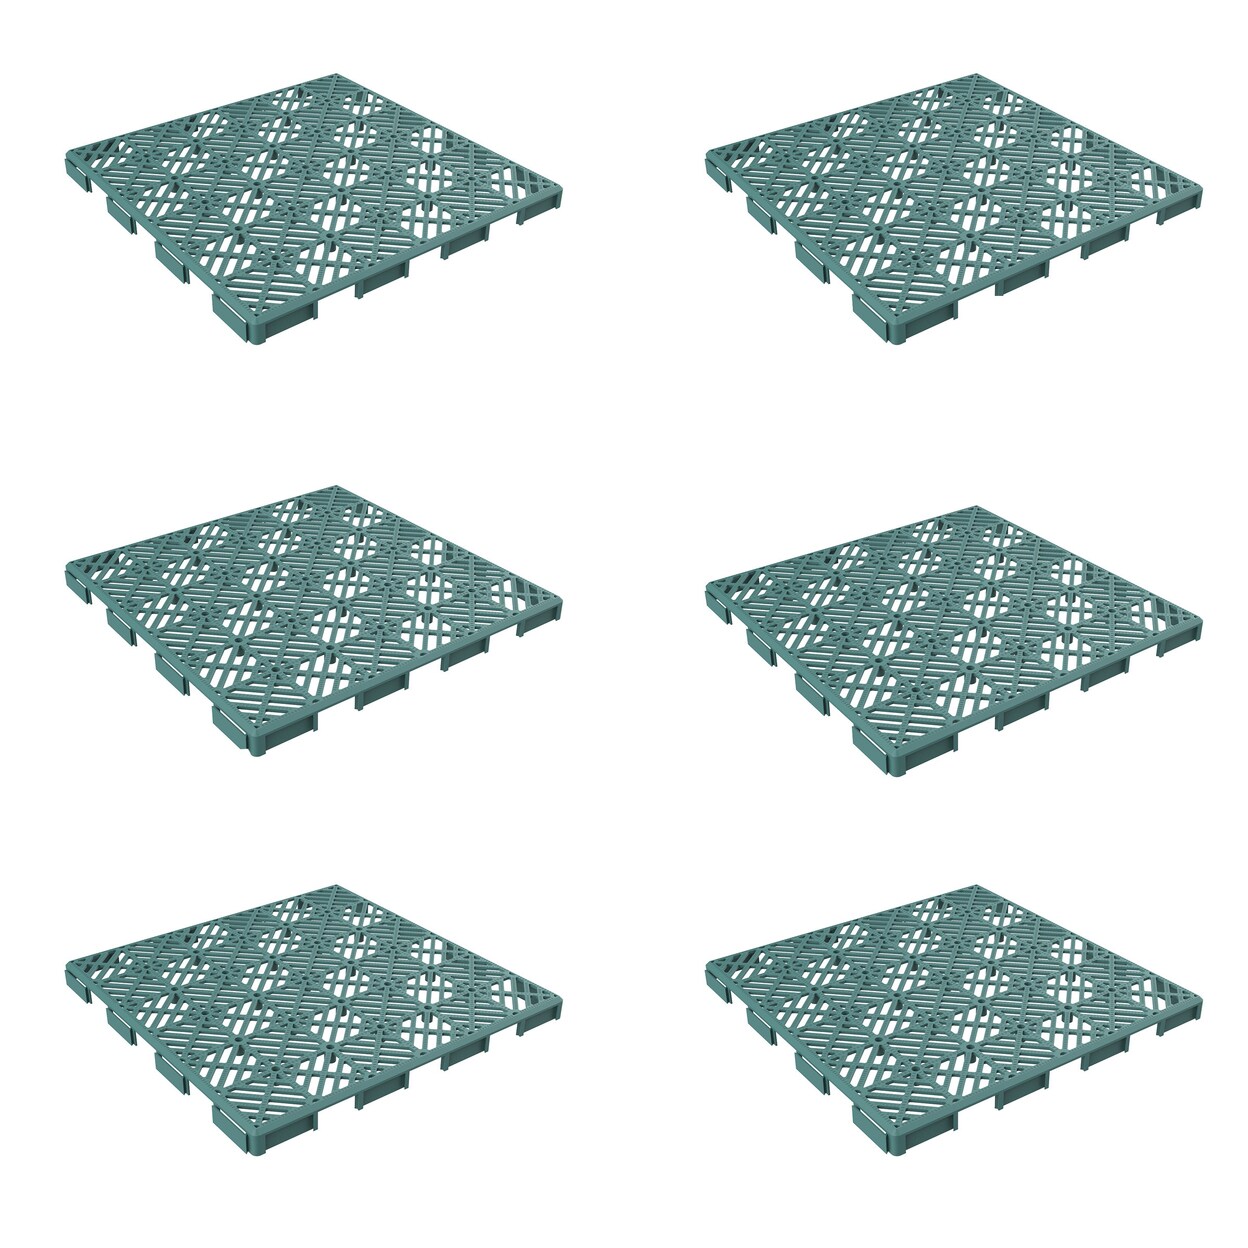 Pure Garden Outdoor Patio Easy Snap Green Floor Tiles 11.5 x 11.5 Set of 6 Water Drainage